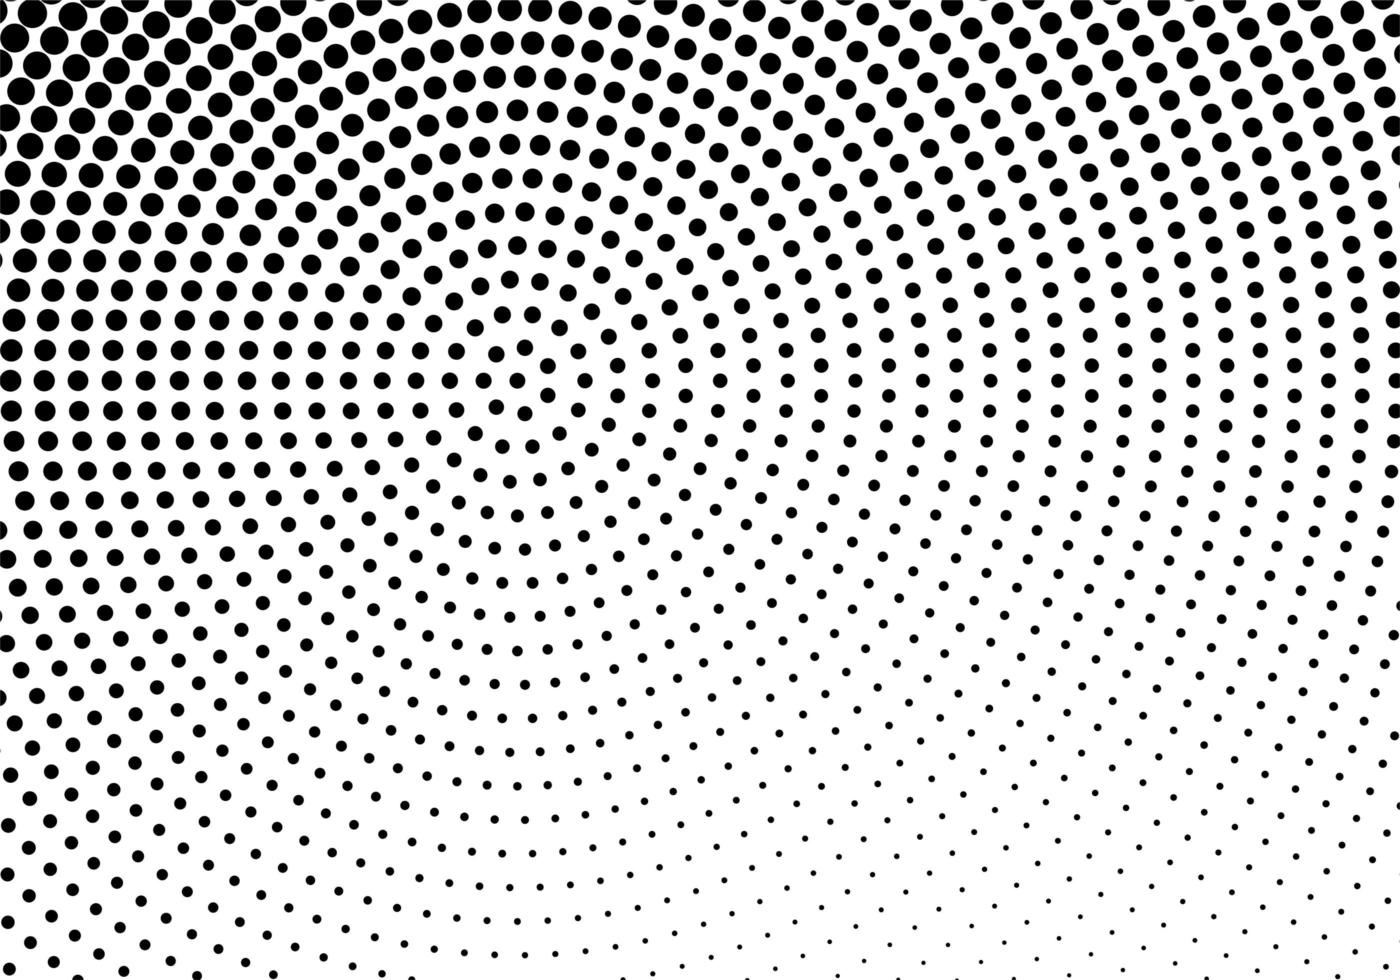 abstrakt cirkulär prickig konsistens vektor